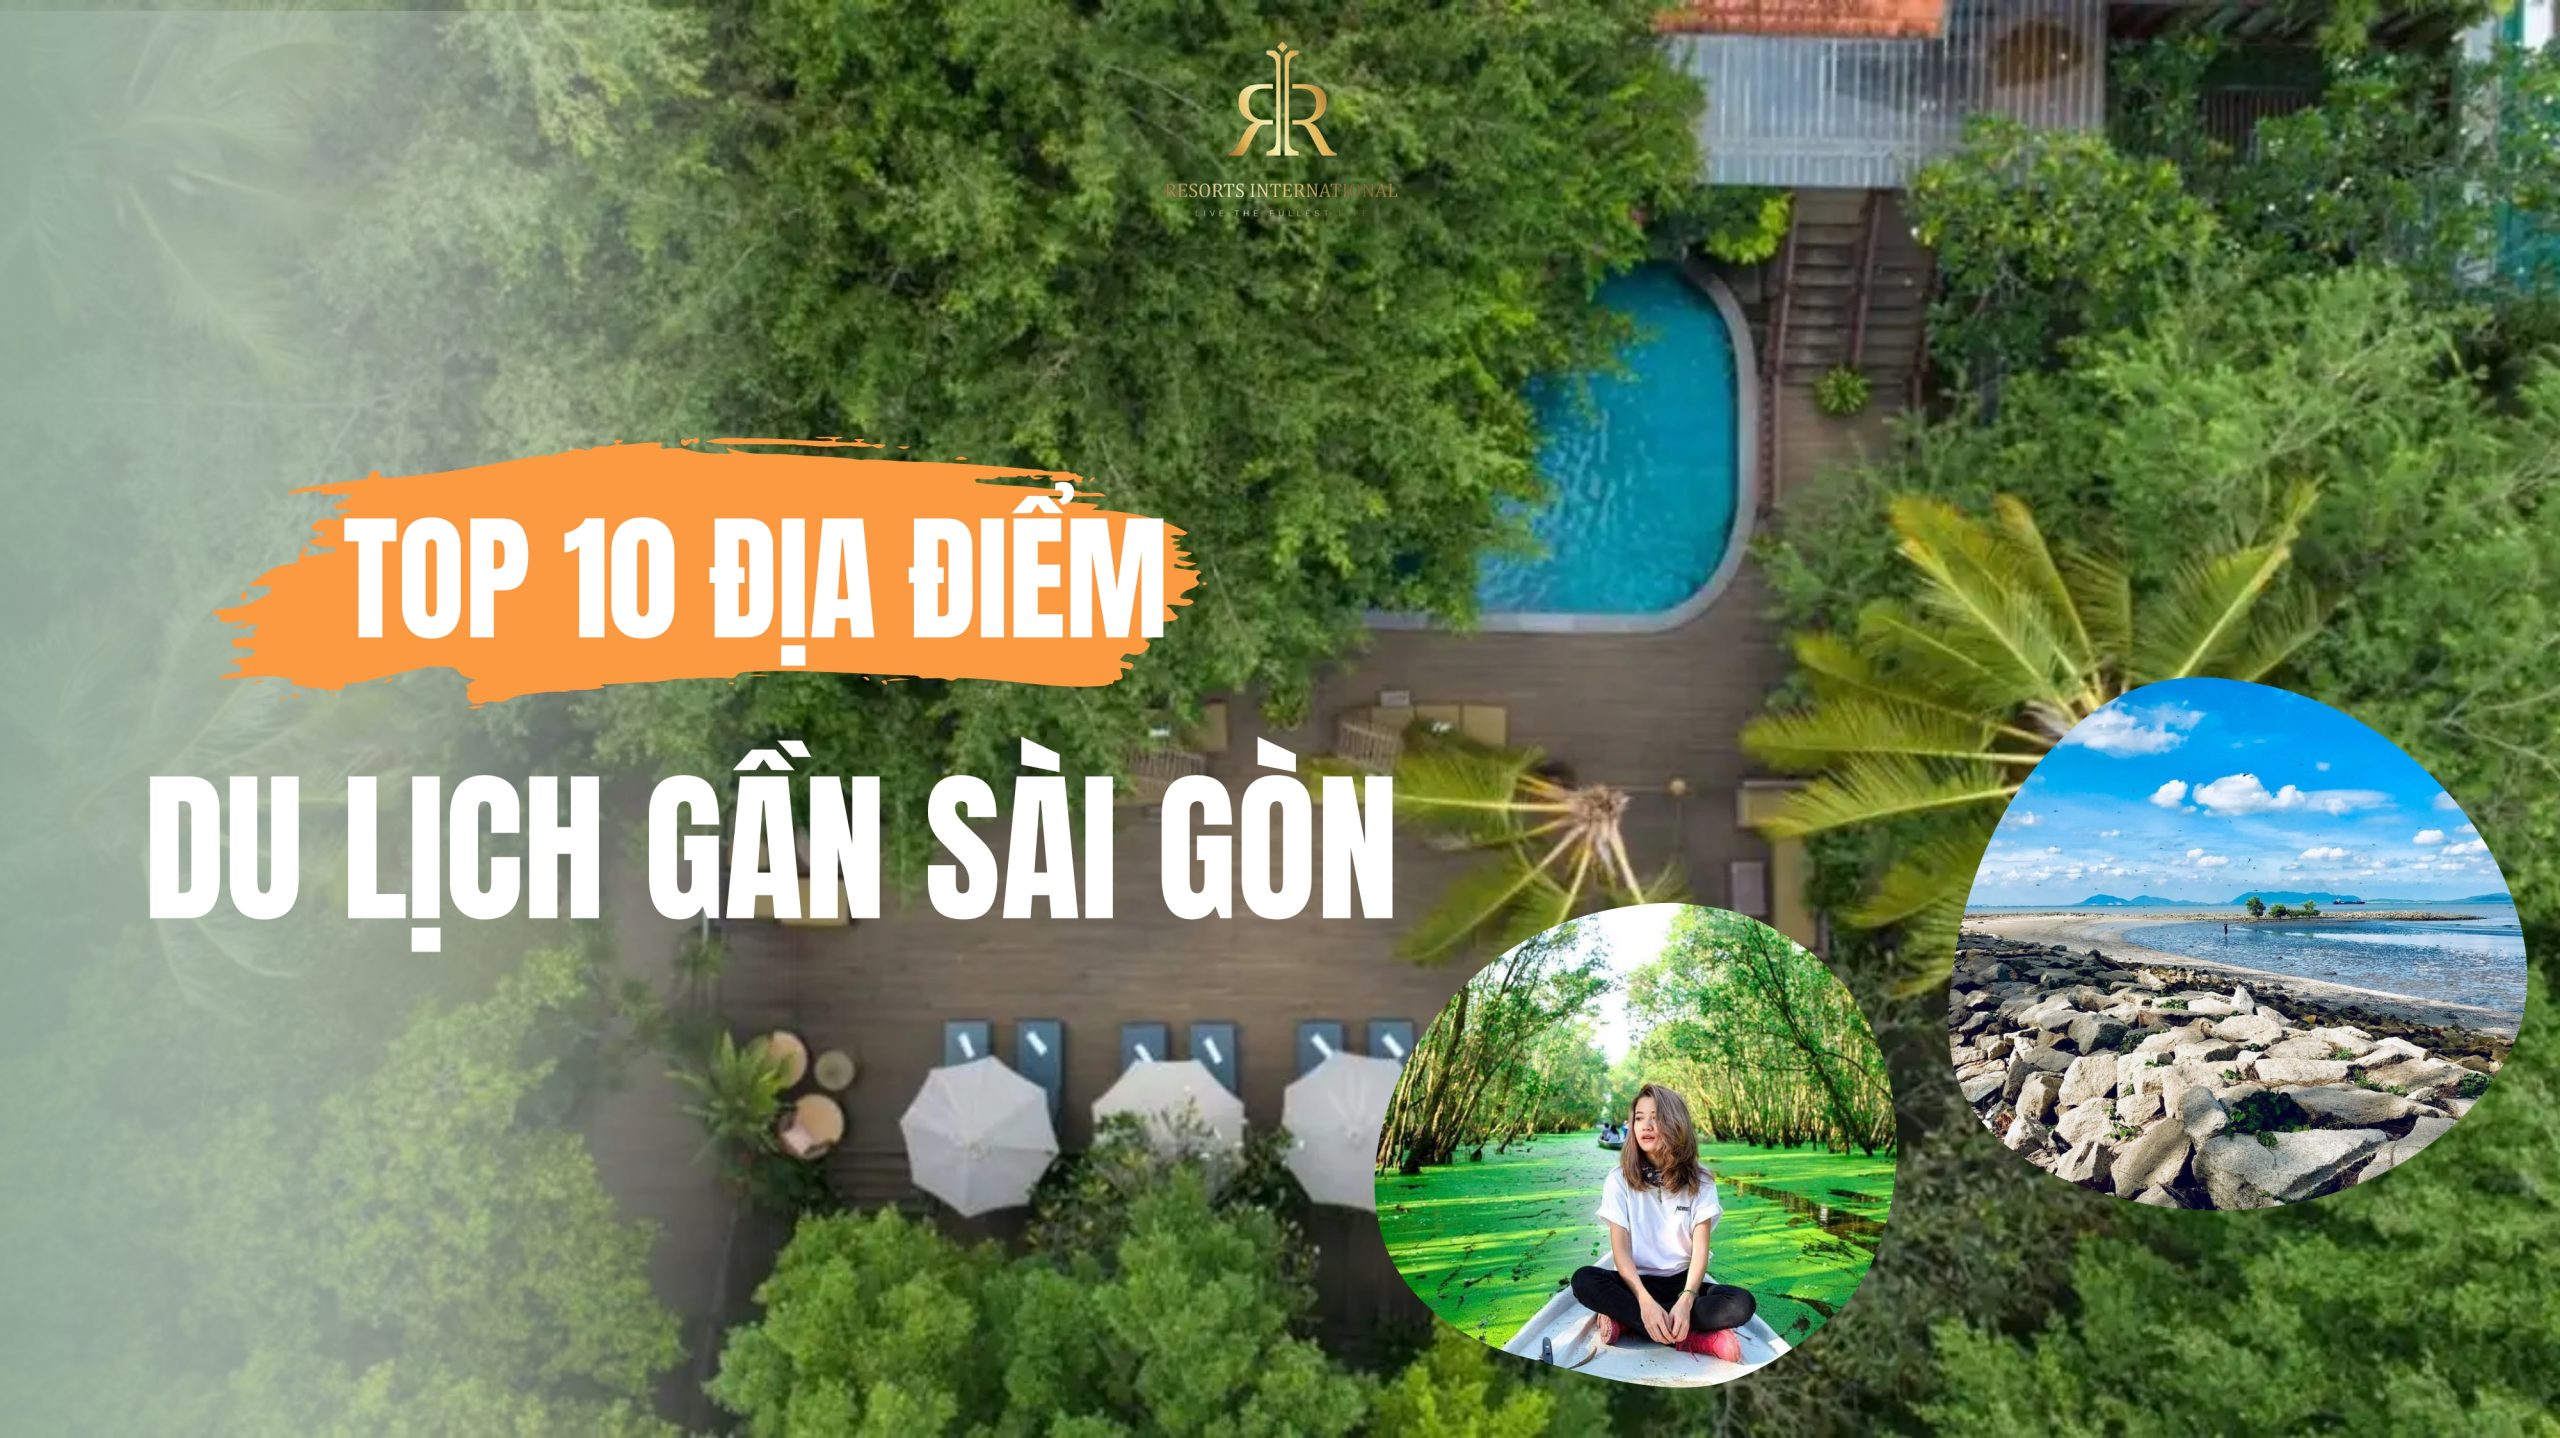 10 địa điểm du lịch gần Sài Gòn nhất định phải đi